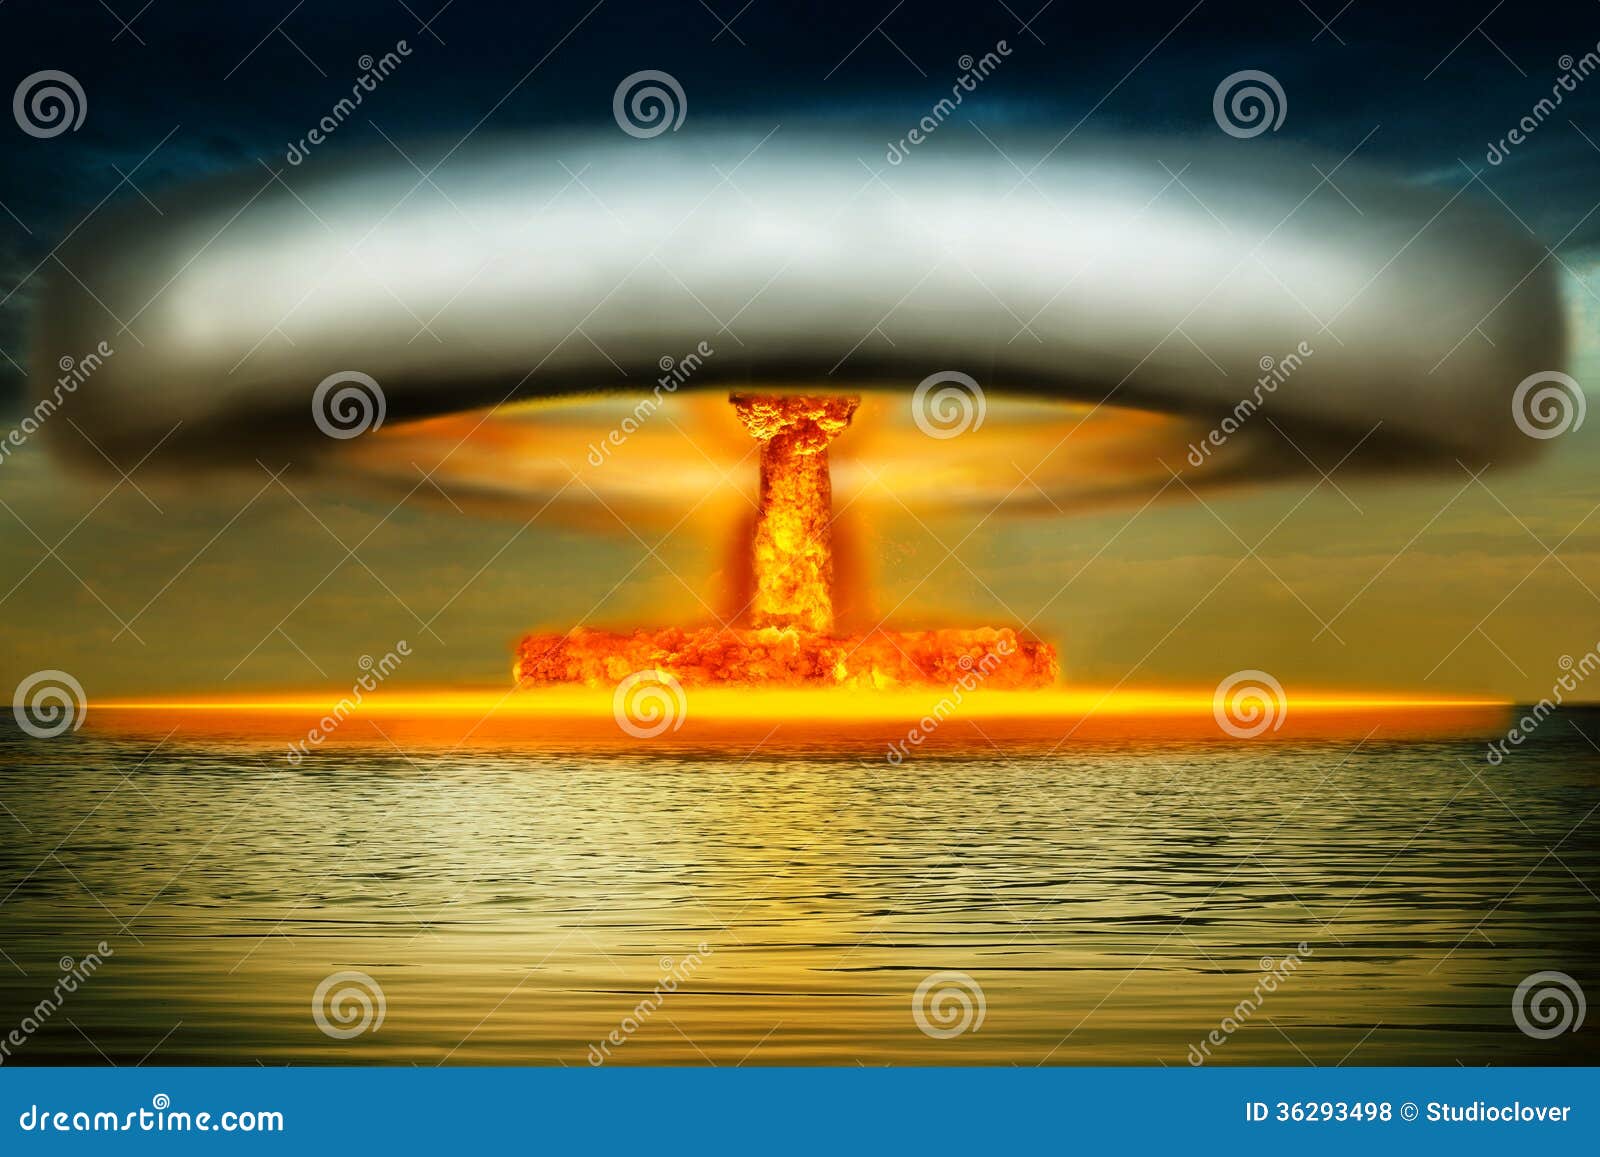 Ядерная пятерка. Надводный ядерный взрыв. Подводный ядерный взрыв. Подводный атомный взрыв. Атомный взрыв в океане.